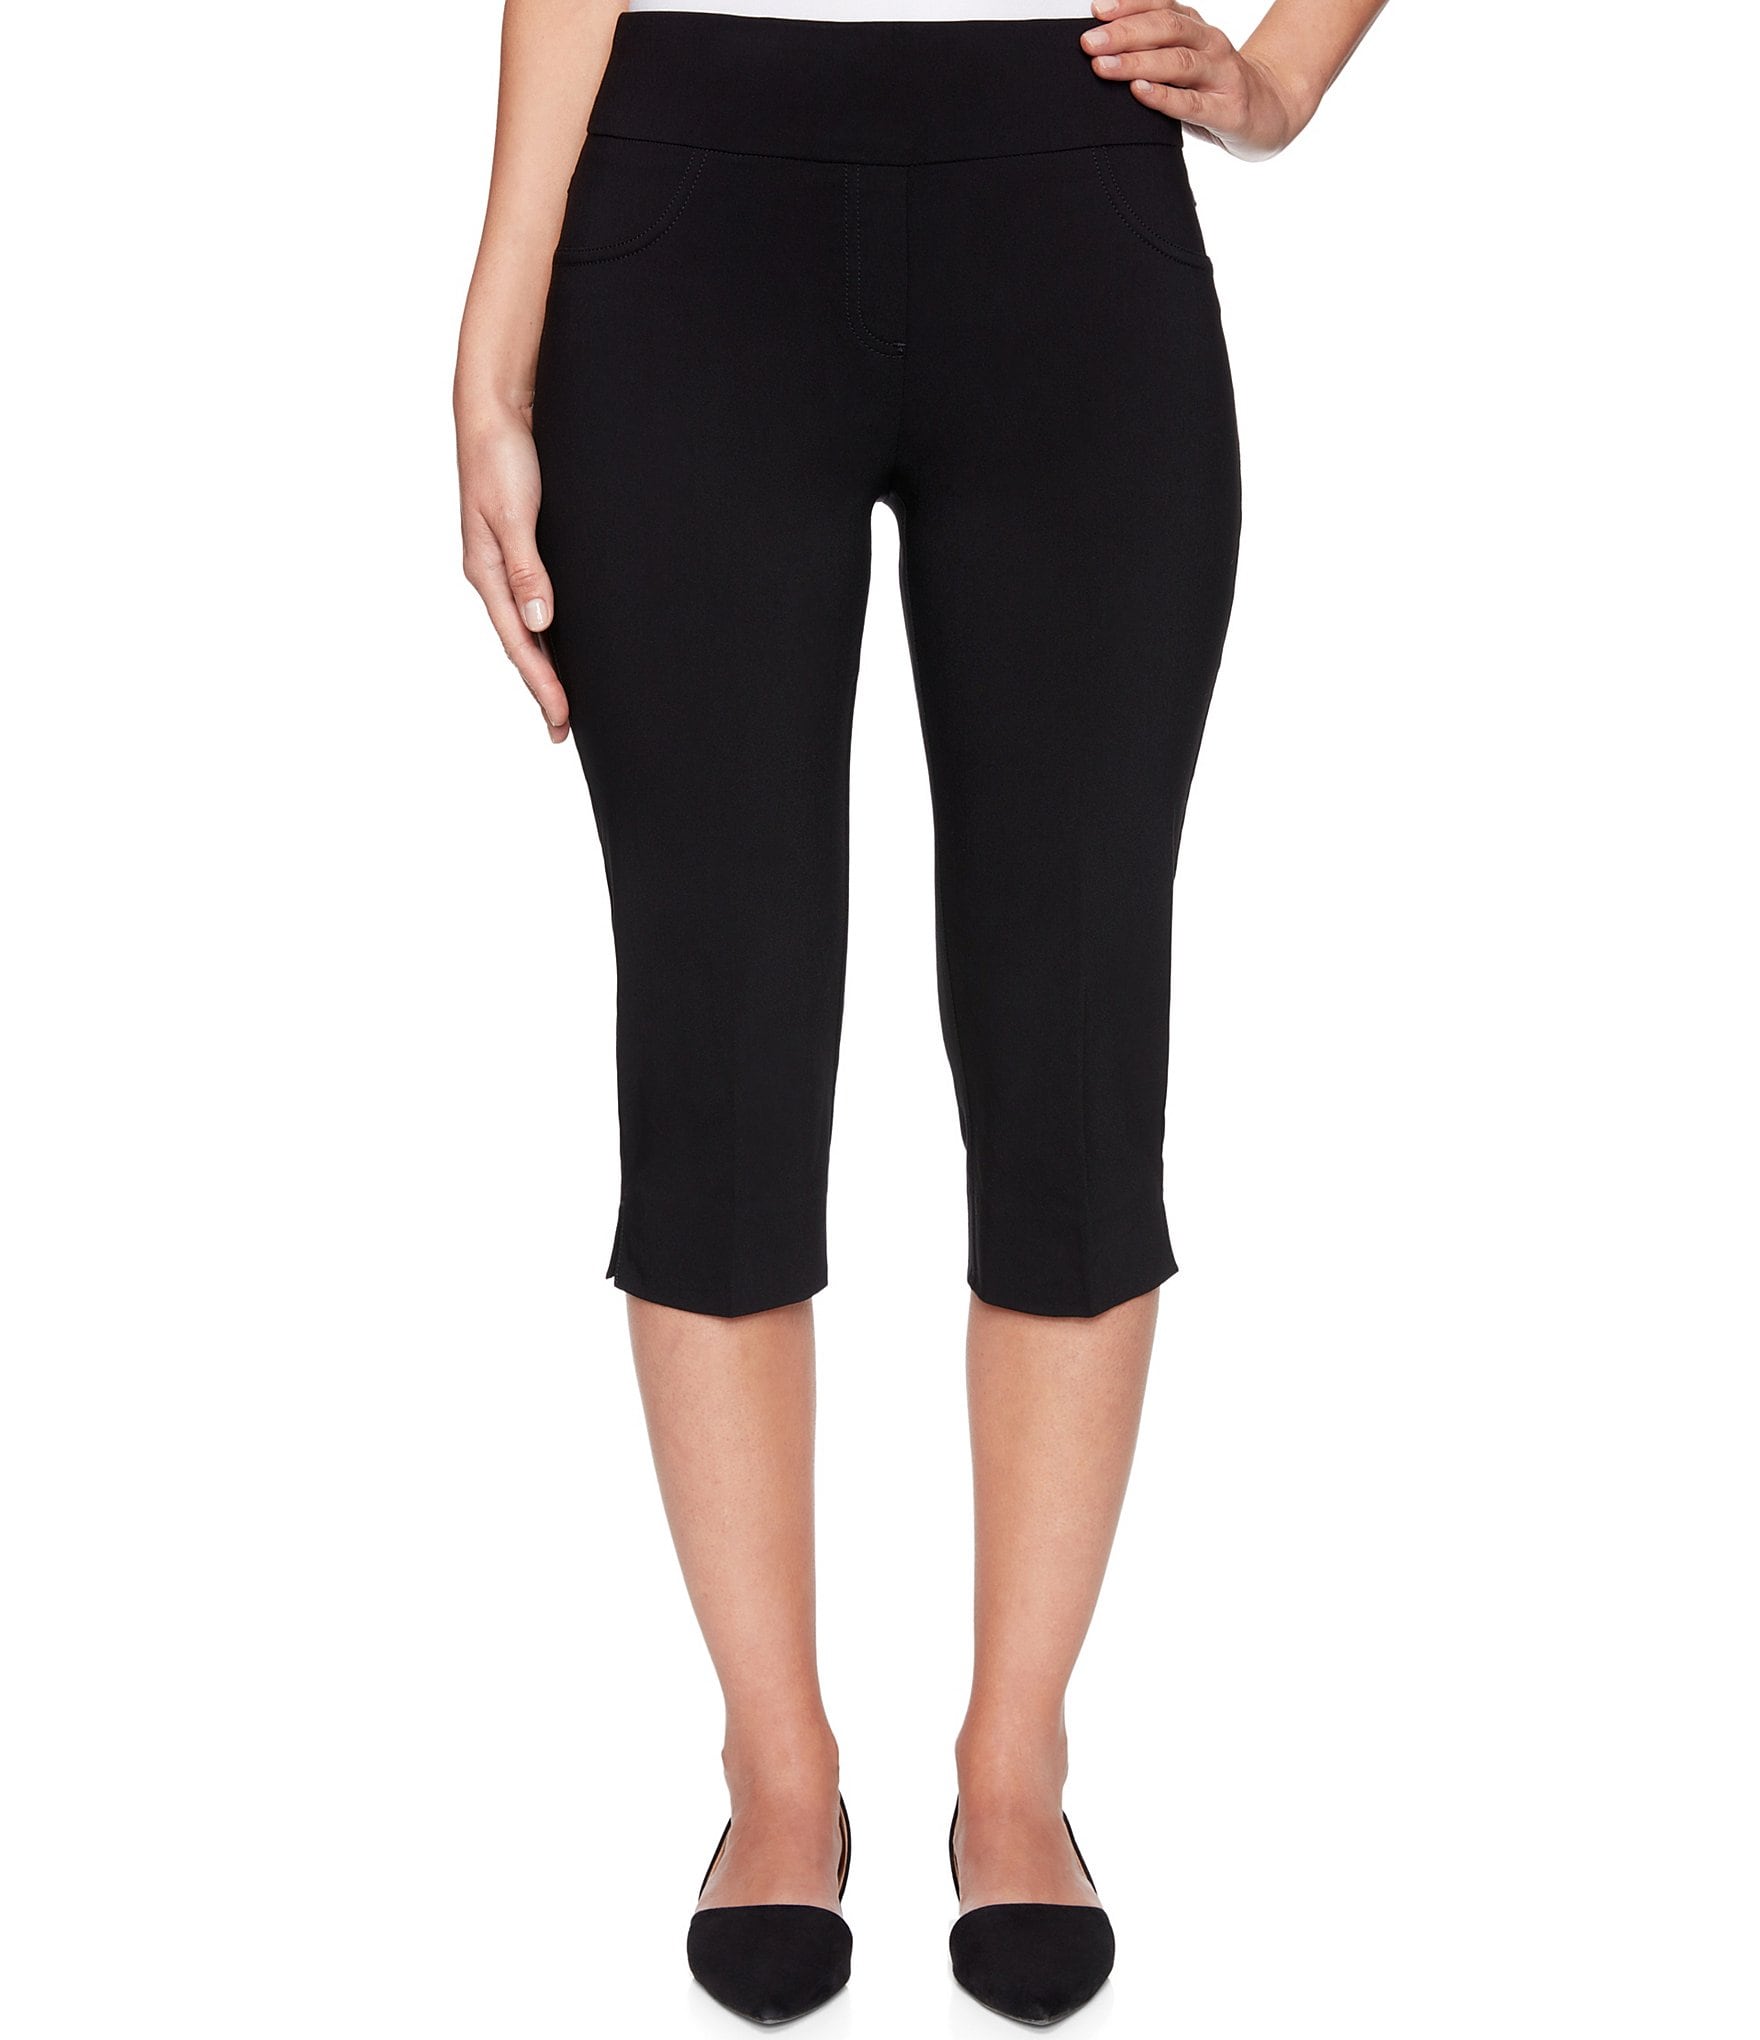 ZUMBA Wear Women's Capri Pants Bold Black/blue Stretch Capri Pants Size L High  Rise Capri Pants Size L Zumba Lover Pants -  Canada